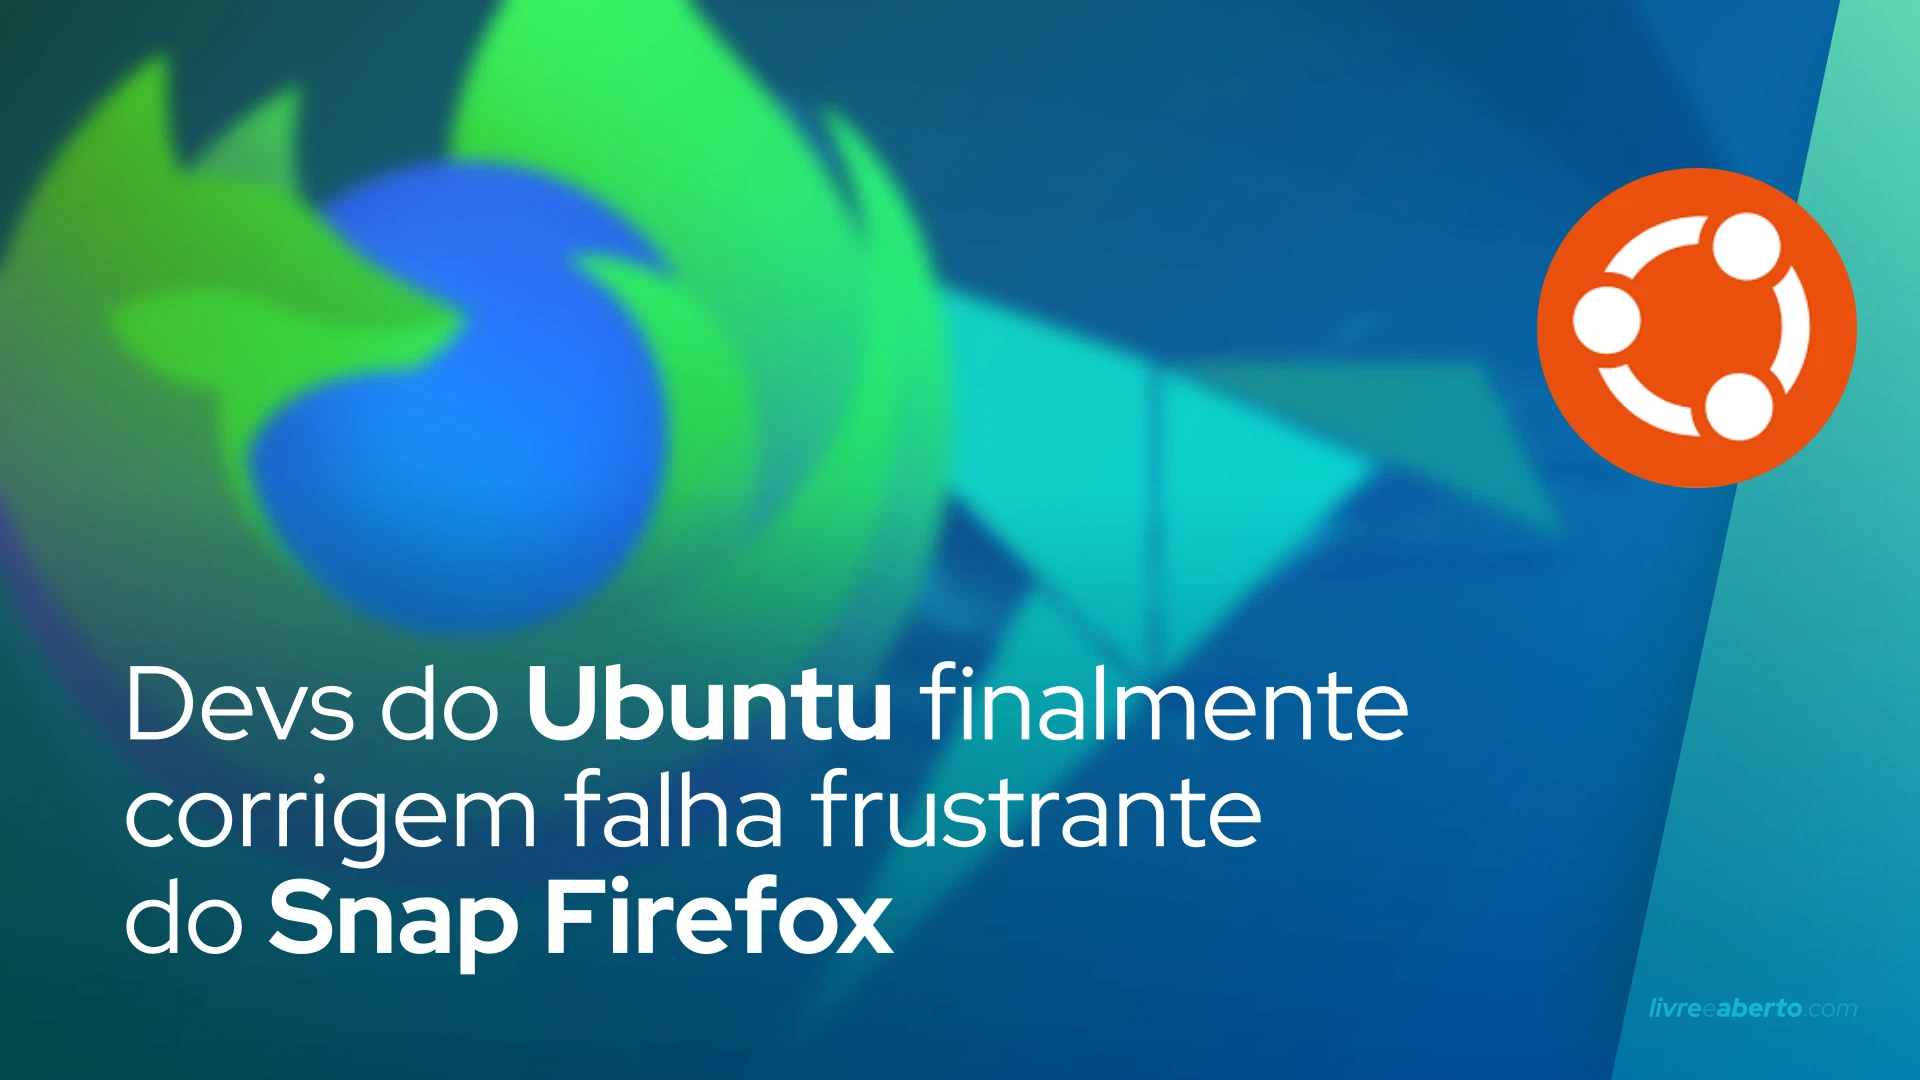 Devs do Ubuntu finalmente corrigem falha frustrante do Snap Firefox